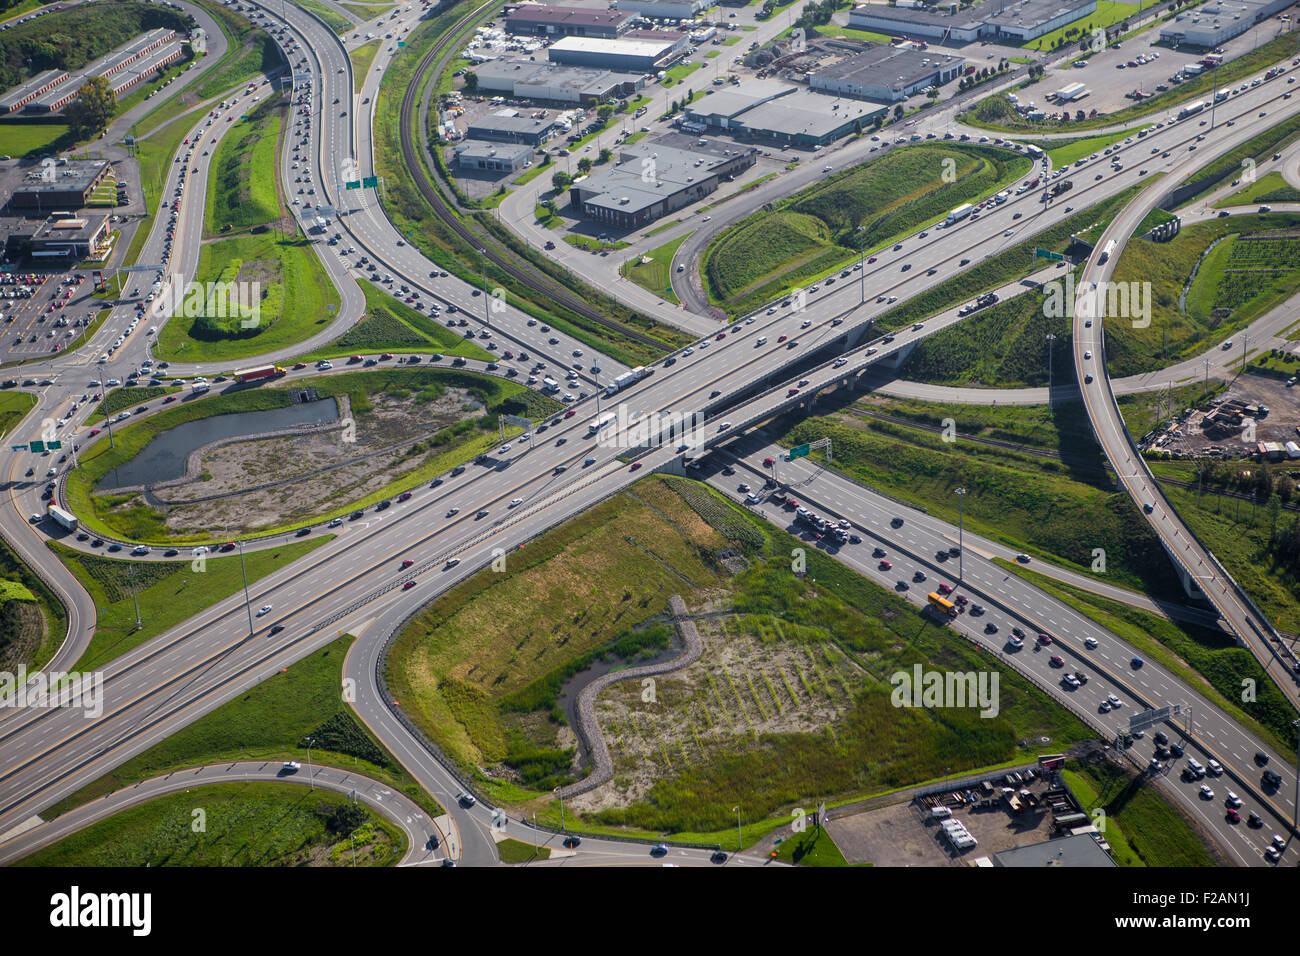 L'Autoroute Robert Bourassa et autoroute autoroute Charest échangeur routier est représentée dans cette vue aérienne de la ville de Québec Banque D'Images